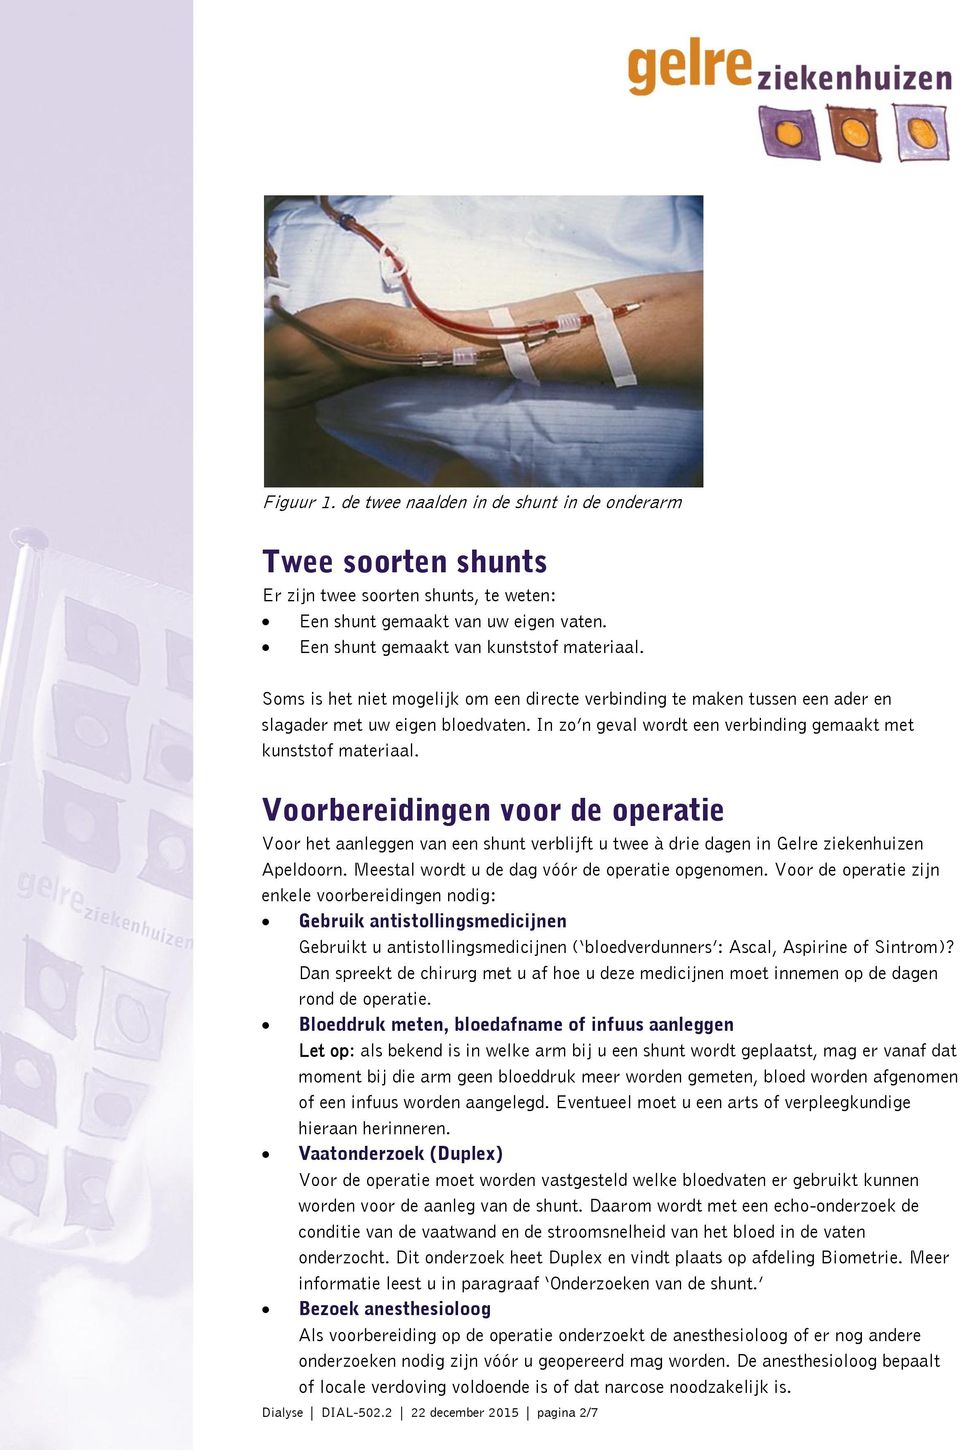 Voorbereidingen voor de operatie Voor het aanleggen van een shunt verblijft u twee à drie dagen in Gelre ziekenhuizen Apeldoorn. Meestal wordt u de dag vóór de operatie opgenomen.